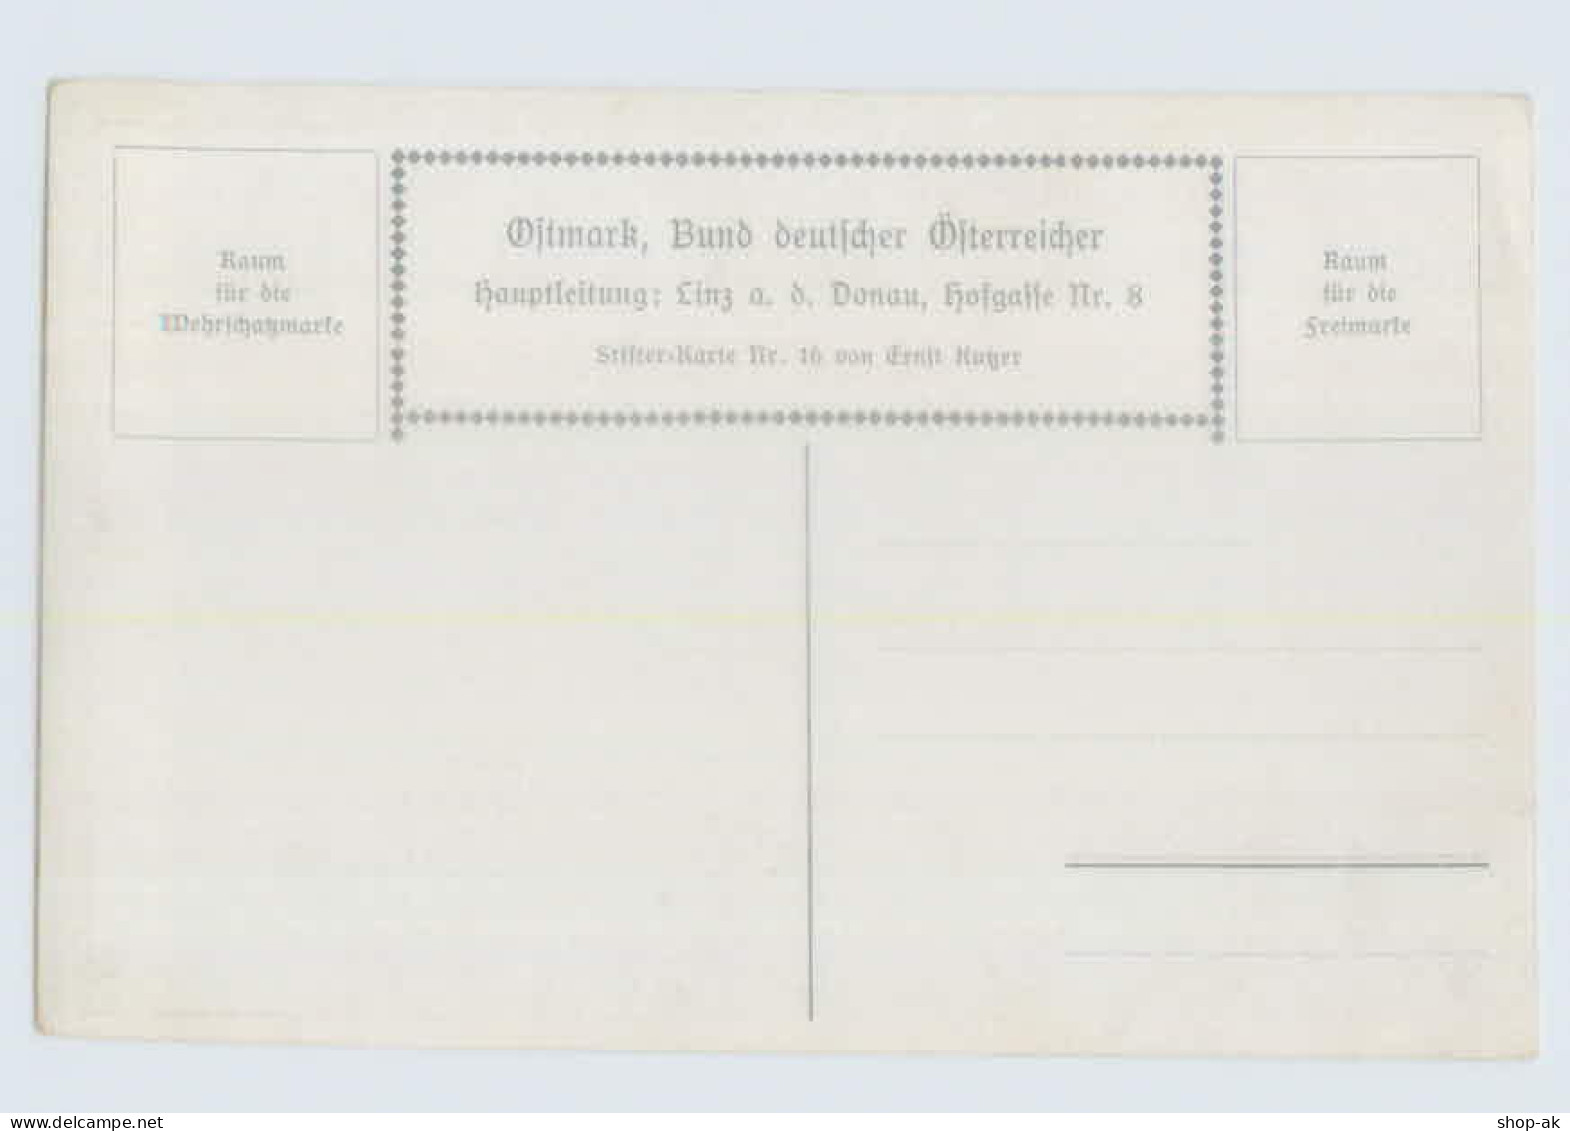 W9C52/ Ostmark, Bund Deutscher Österreicher Stifter AK Nr. 16  E. Kutzer - Mailick, Alfred